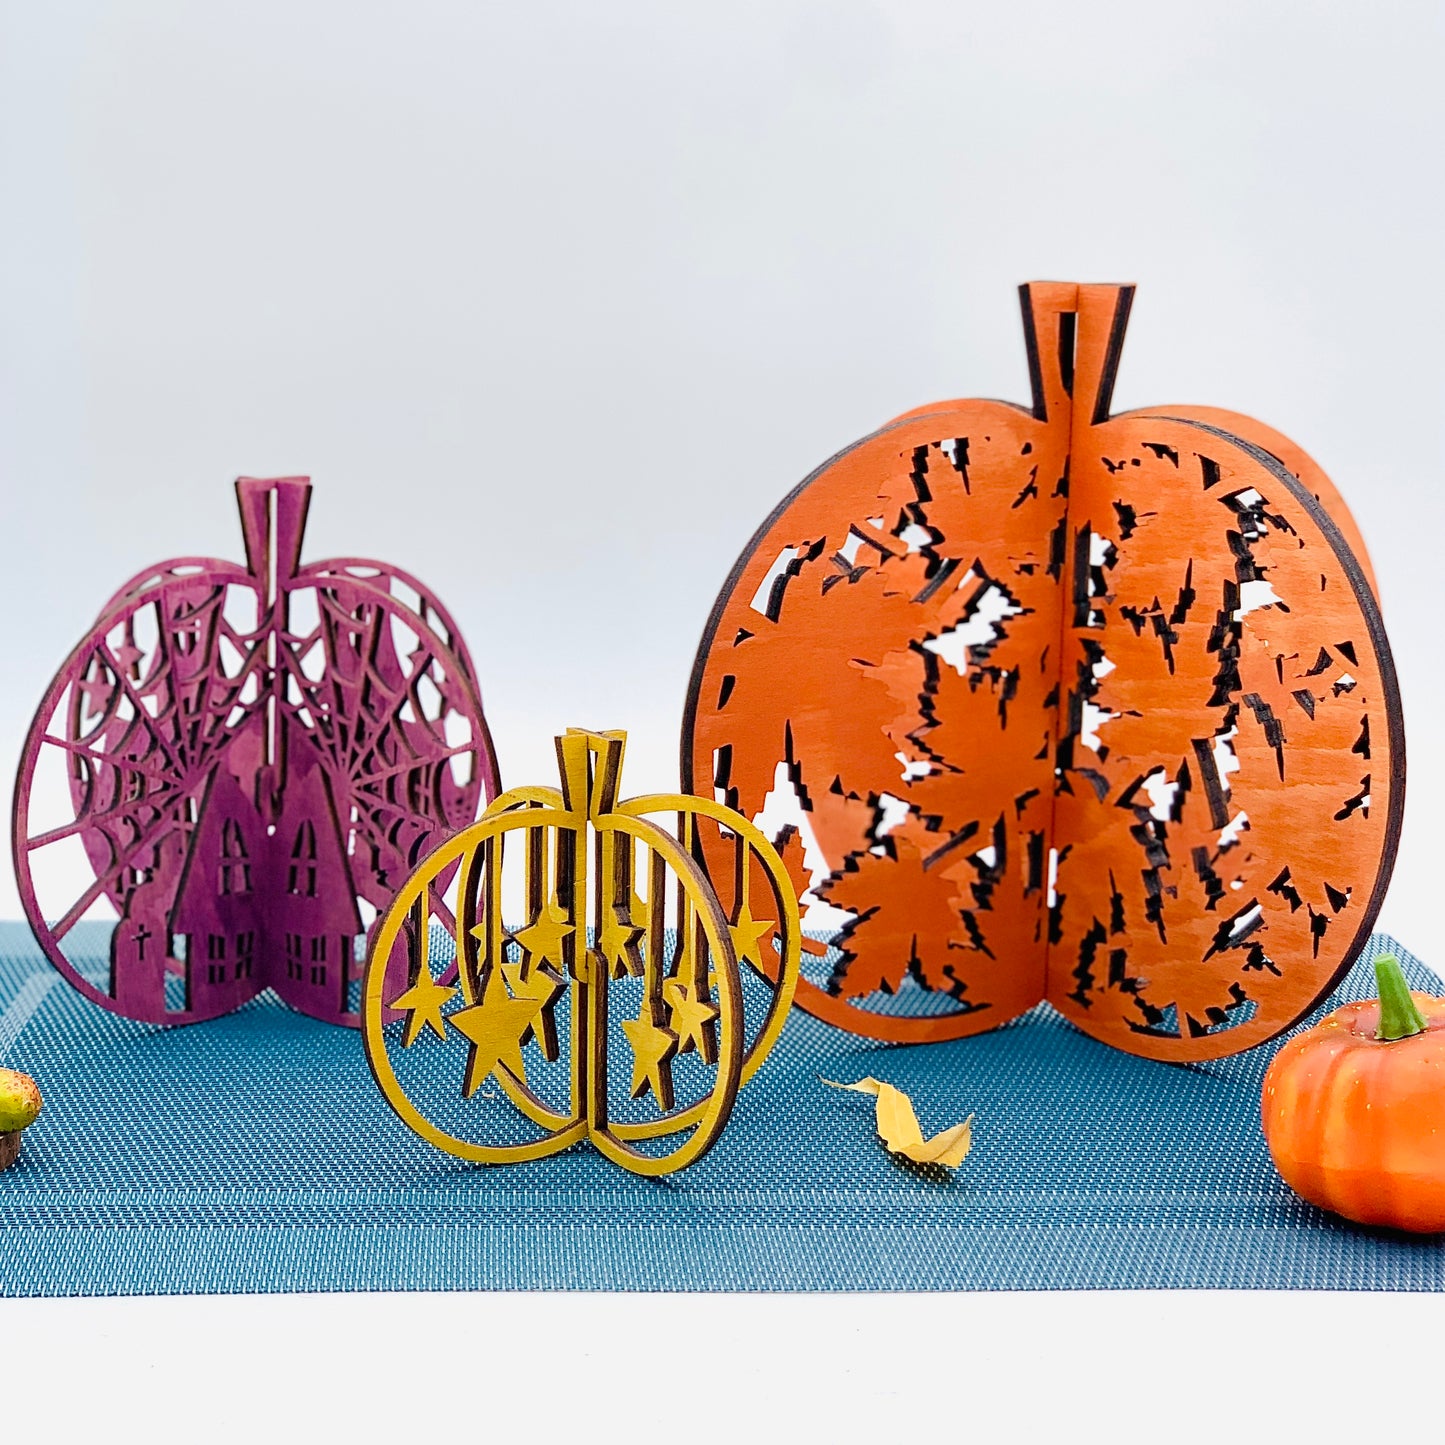 3D Halloween Kürbis Holz - Herbstdeko Halloween - Tischdeko Kürbis - Geschenkidee Herbst - Halloween Kürbis Deko Set - Herbstdeko innen